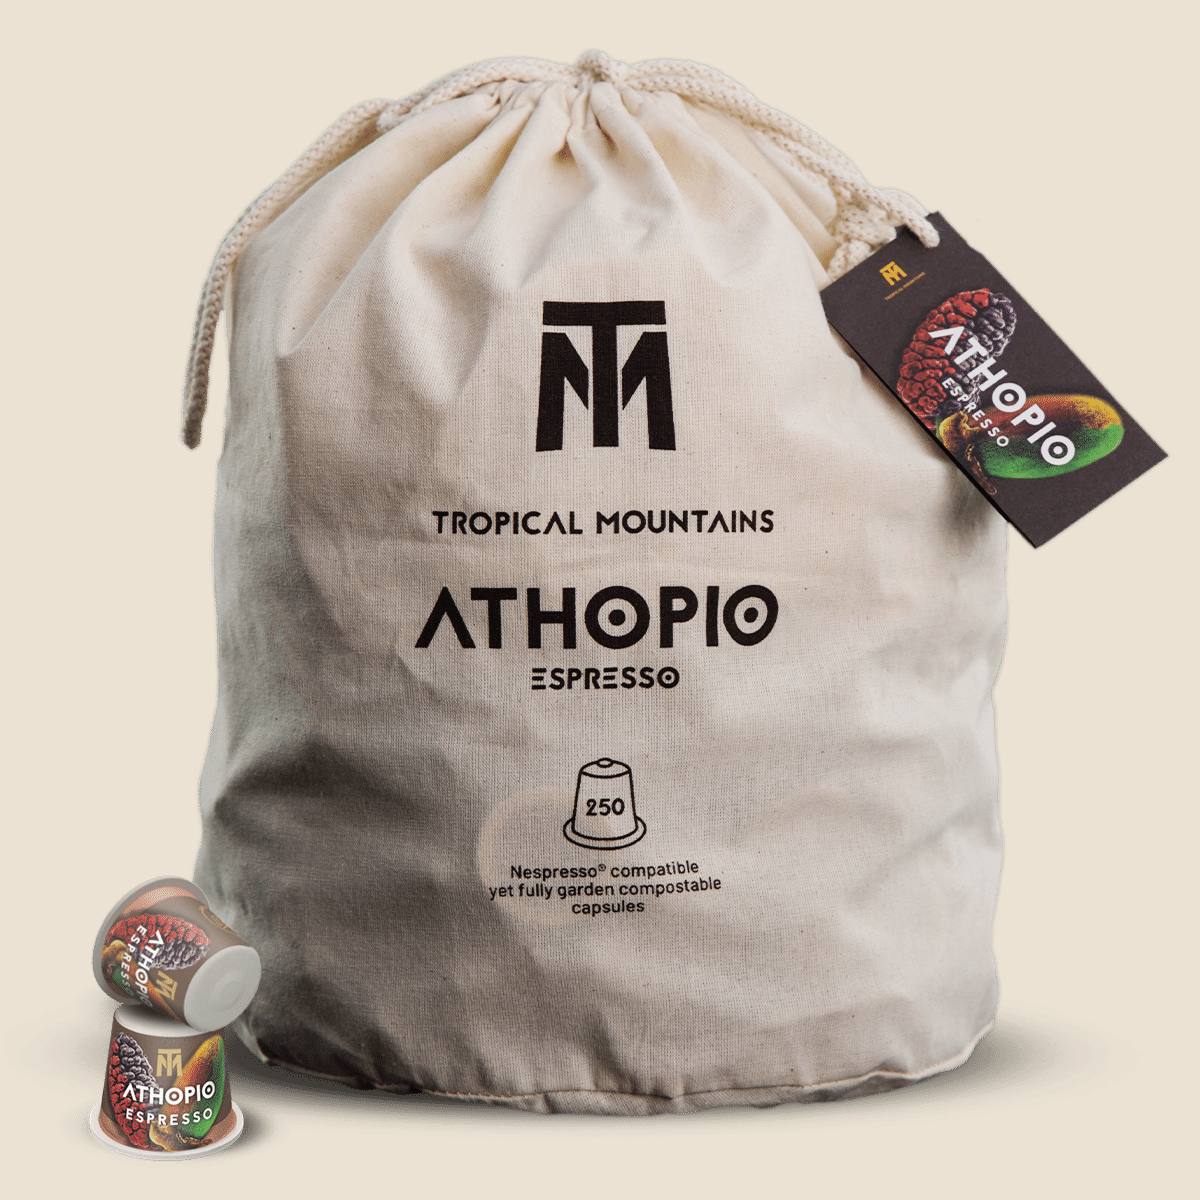 ATHOPIO Espresso capsules de café bio Fair Trade